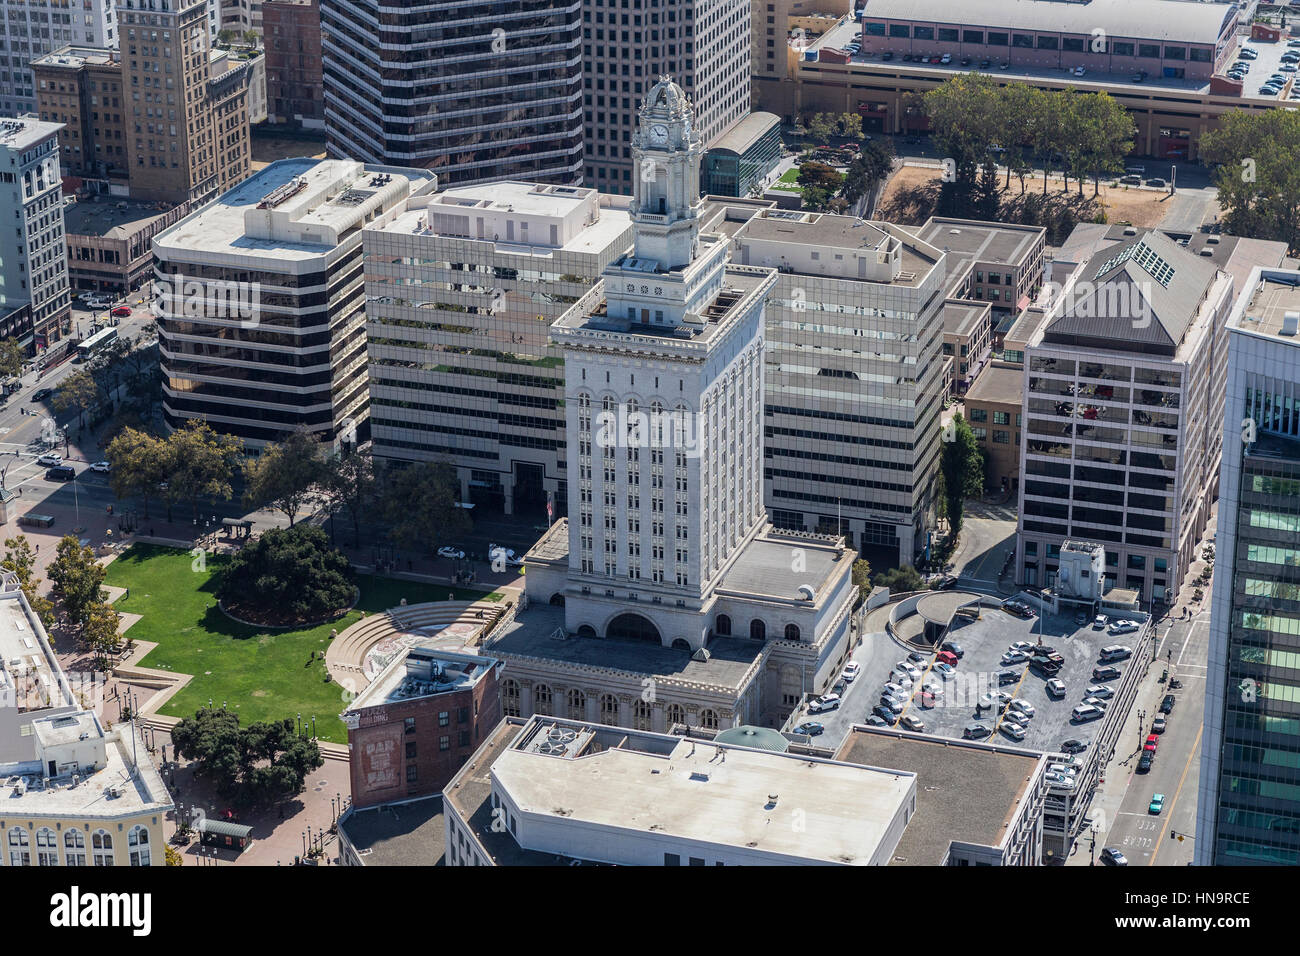 Oakland, Californie, USA - 19 septembre 2016 : Après-midi vue aérienne de l'hôtel de ville d'Oakland. Banque D'Images